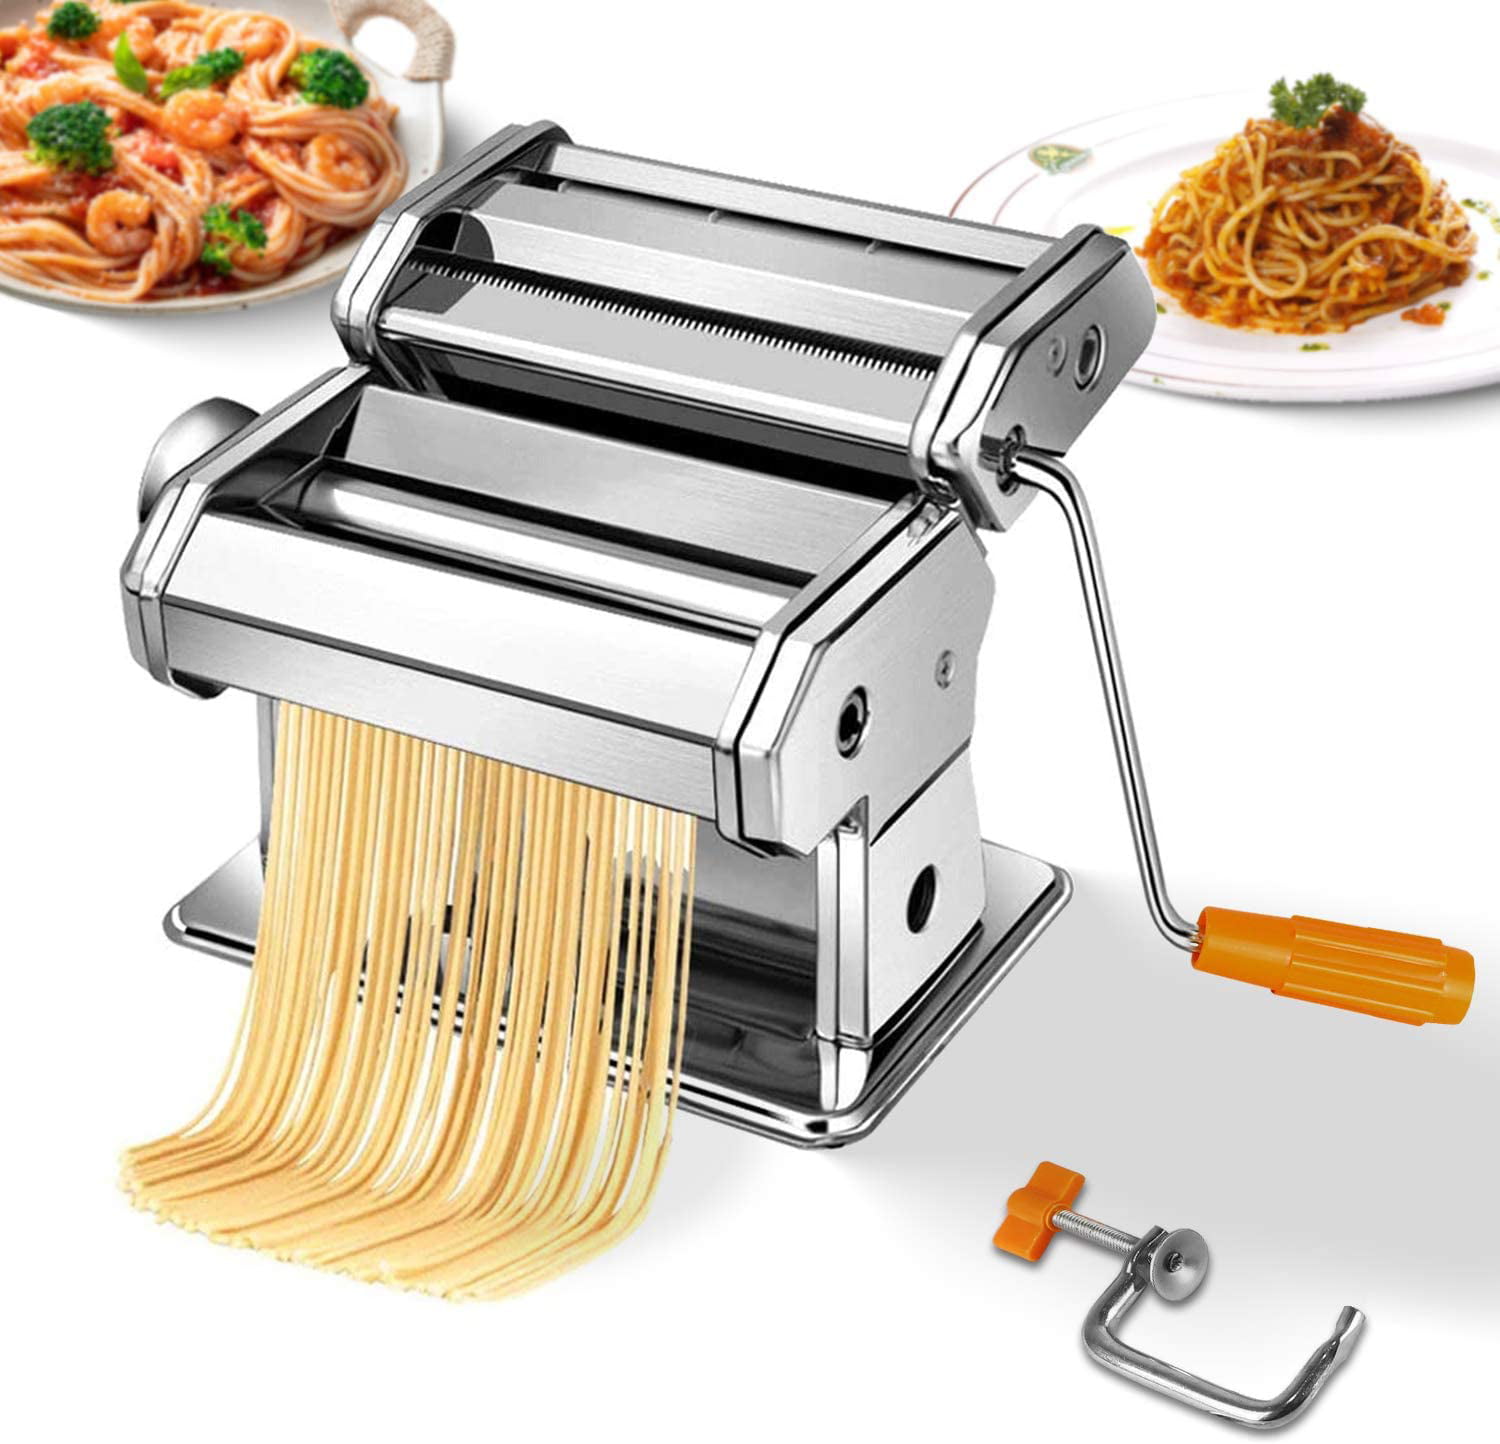 Stainless Steel Fresh Pasta Maker Roller Machine for Spaghetti Noodle Fettuccine 